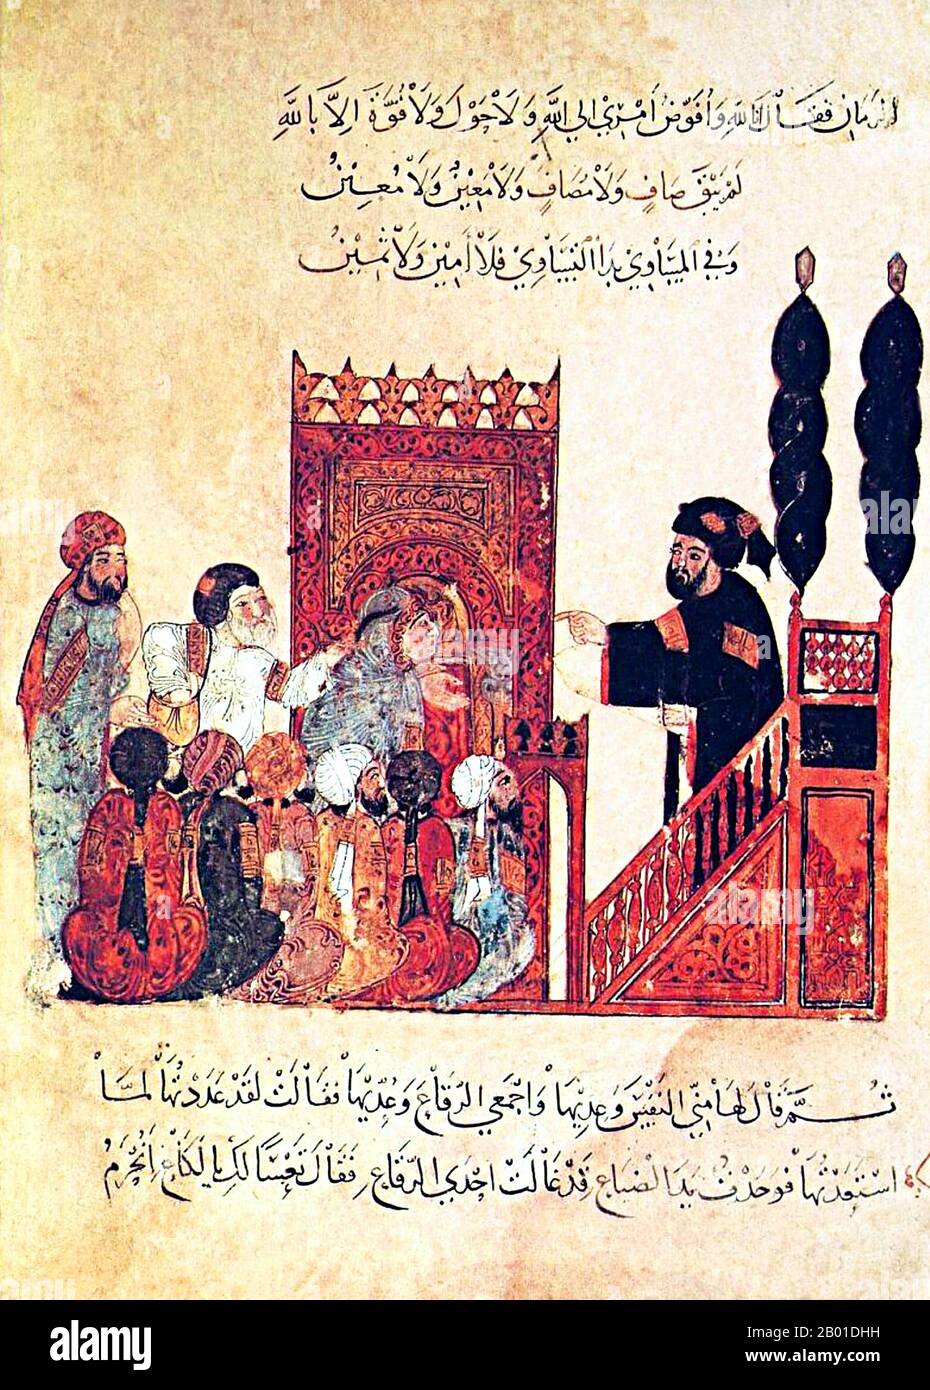 Irak/Arabien: Der Imam einer Moschee, die an versammelte Gläubige aus der Minbar oder Kanzel spricht. Miniatur von Yahya ibn Mahmud al-Wasiti (FL. 13.. Jahrhundert), 1237 CE. Yahyâ ibn Mahmûd al-Wâsitî war ein arabischer islamischer Künstler des 13.. Jahrhunderts. Al-Wasiti wurde in Wasit im Südirak geboren. Er war bekannt für seine Illustrationen des Maqam von al-Hariri. Maqāma (wörtlich „Assemblys“) sind ein (ursprünglich) arabisches literarisches Genre der reimten Prosa mit Intervallen der Poesie, in denen rhetorische Extravaganz auffällt. Der Autor Badī al-Zaman al-Hamadhāni aus dem 10.. Jahrhundert soll die Form erfunden haben. Stockfoto